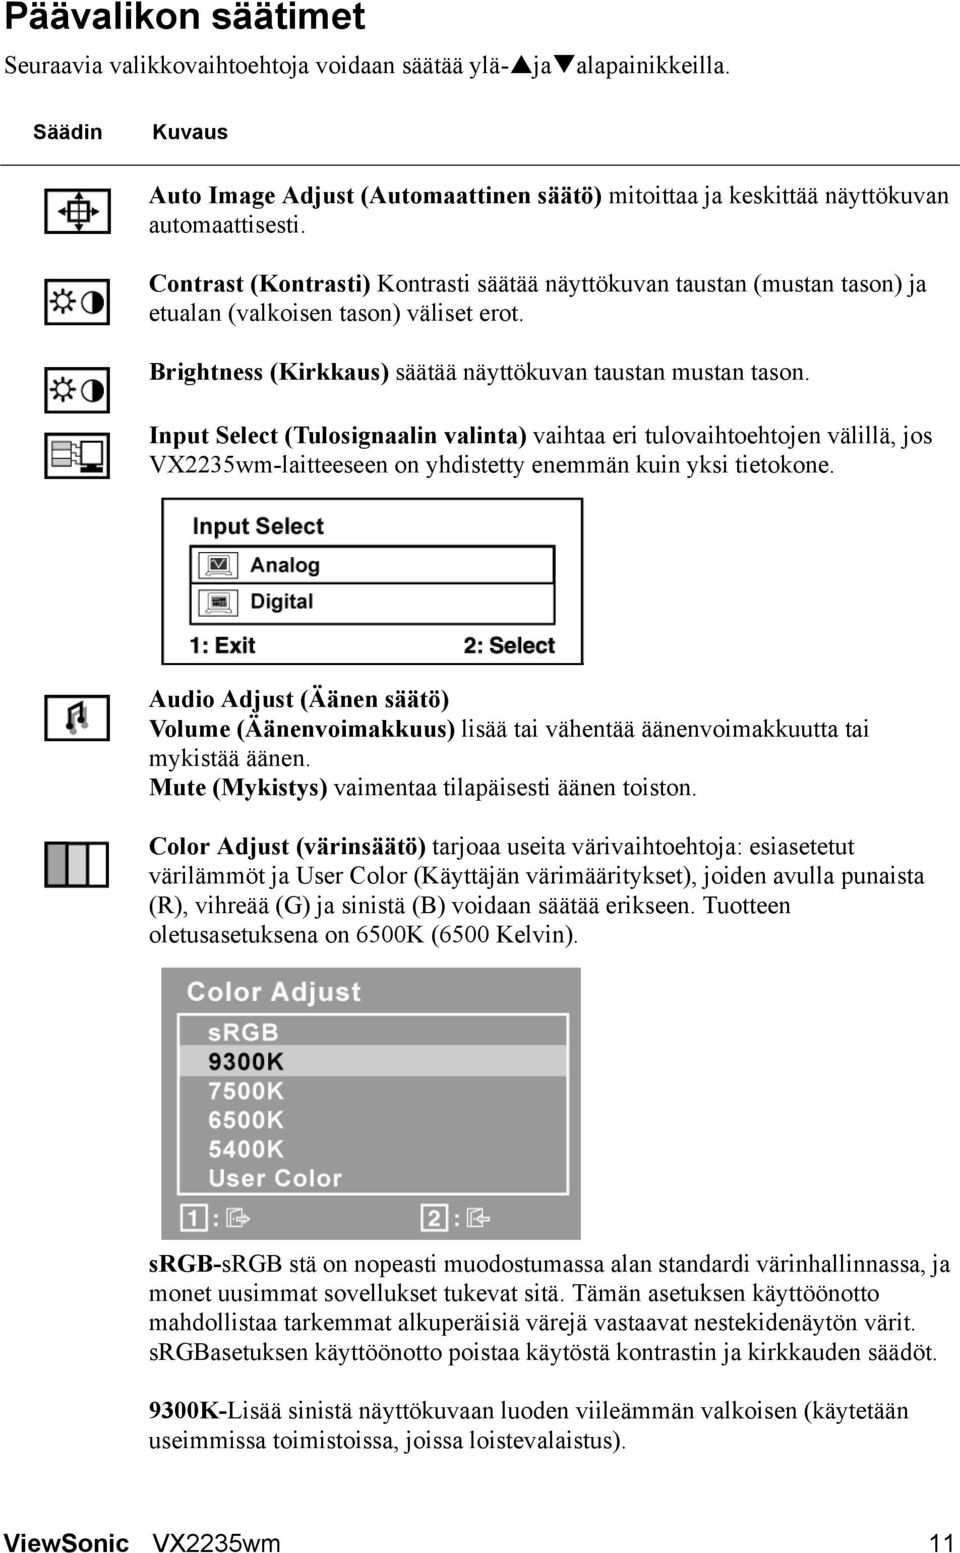 Input Select (Tulosignaalin valinta) vaihtaa eri tulovaihtoehtojen välillä, jos VX2235wm-laitteeseen on yhdistetty enemmän kuin yksi tietokone.